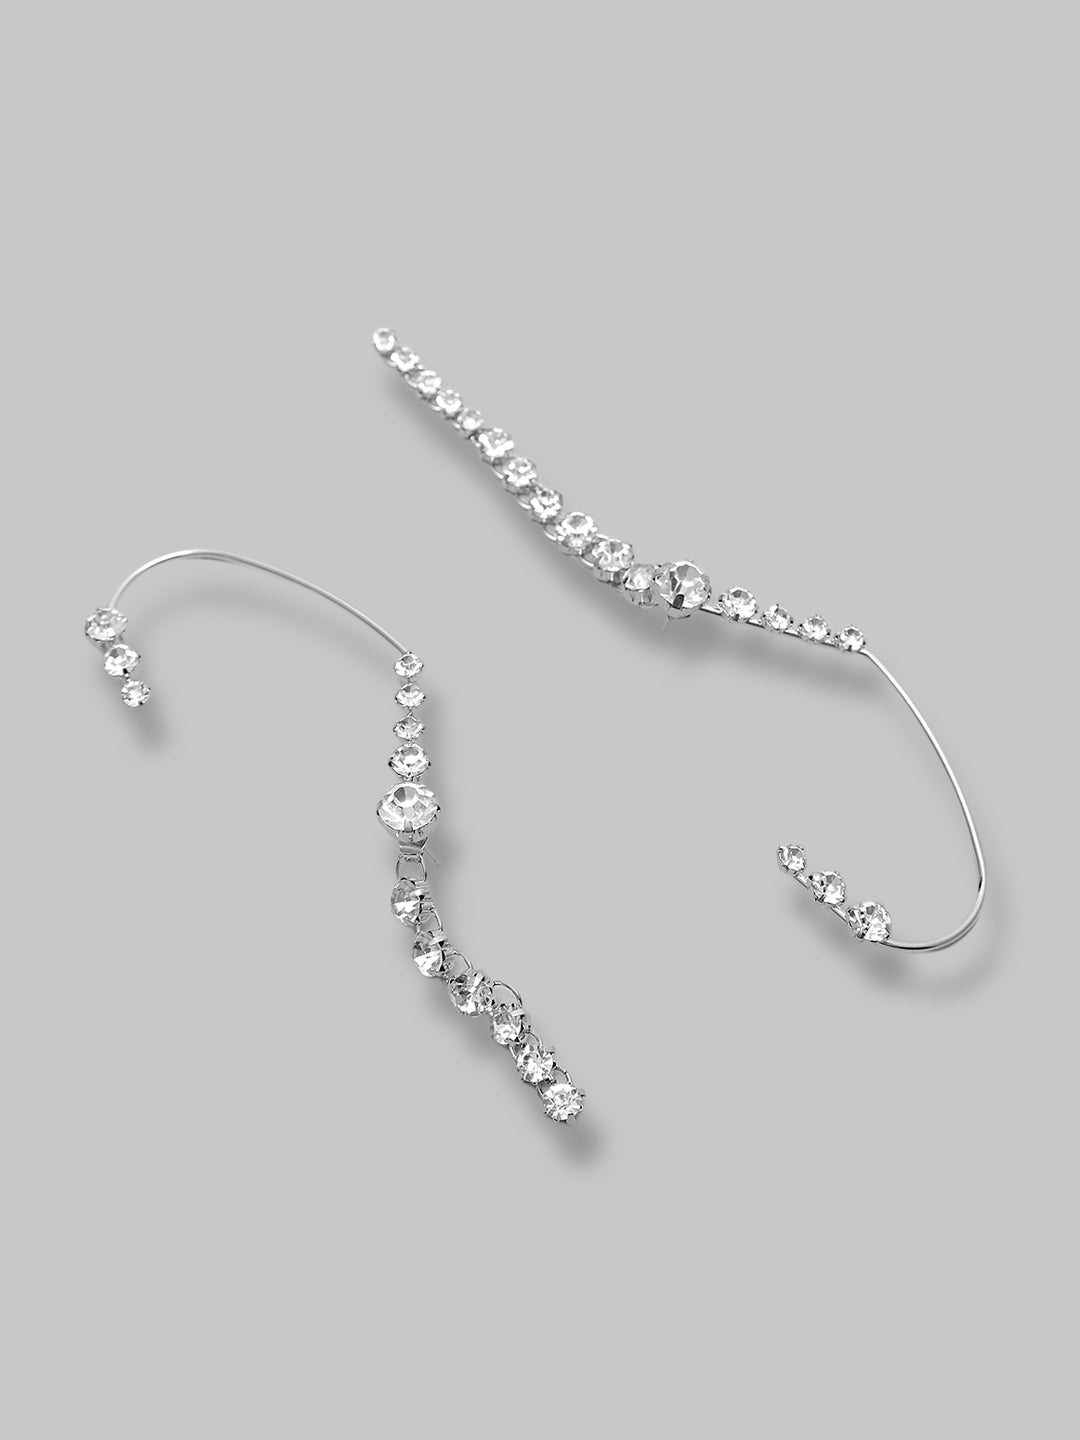 Fancy Latest Stone Silver Strings Ear Cuffs Earrings For Girls and Women